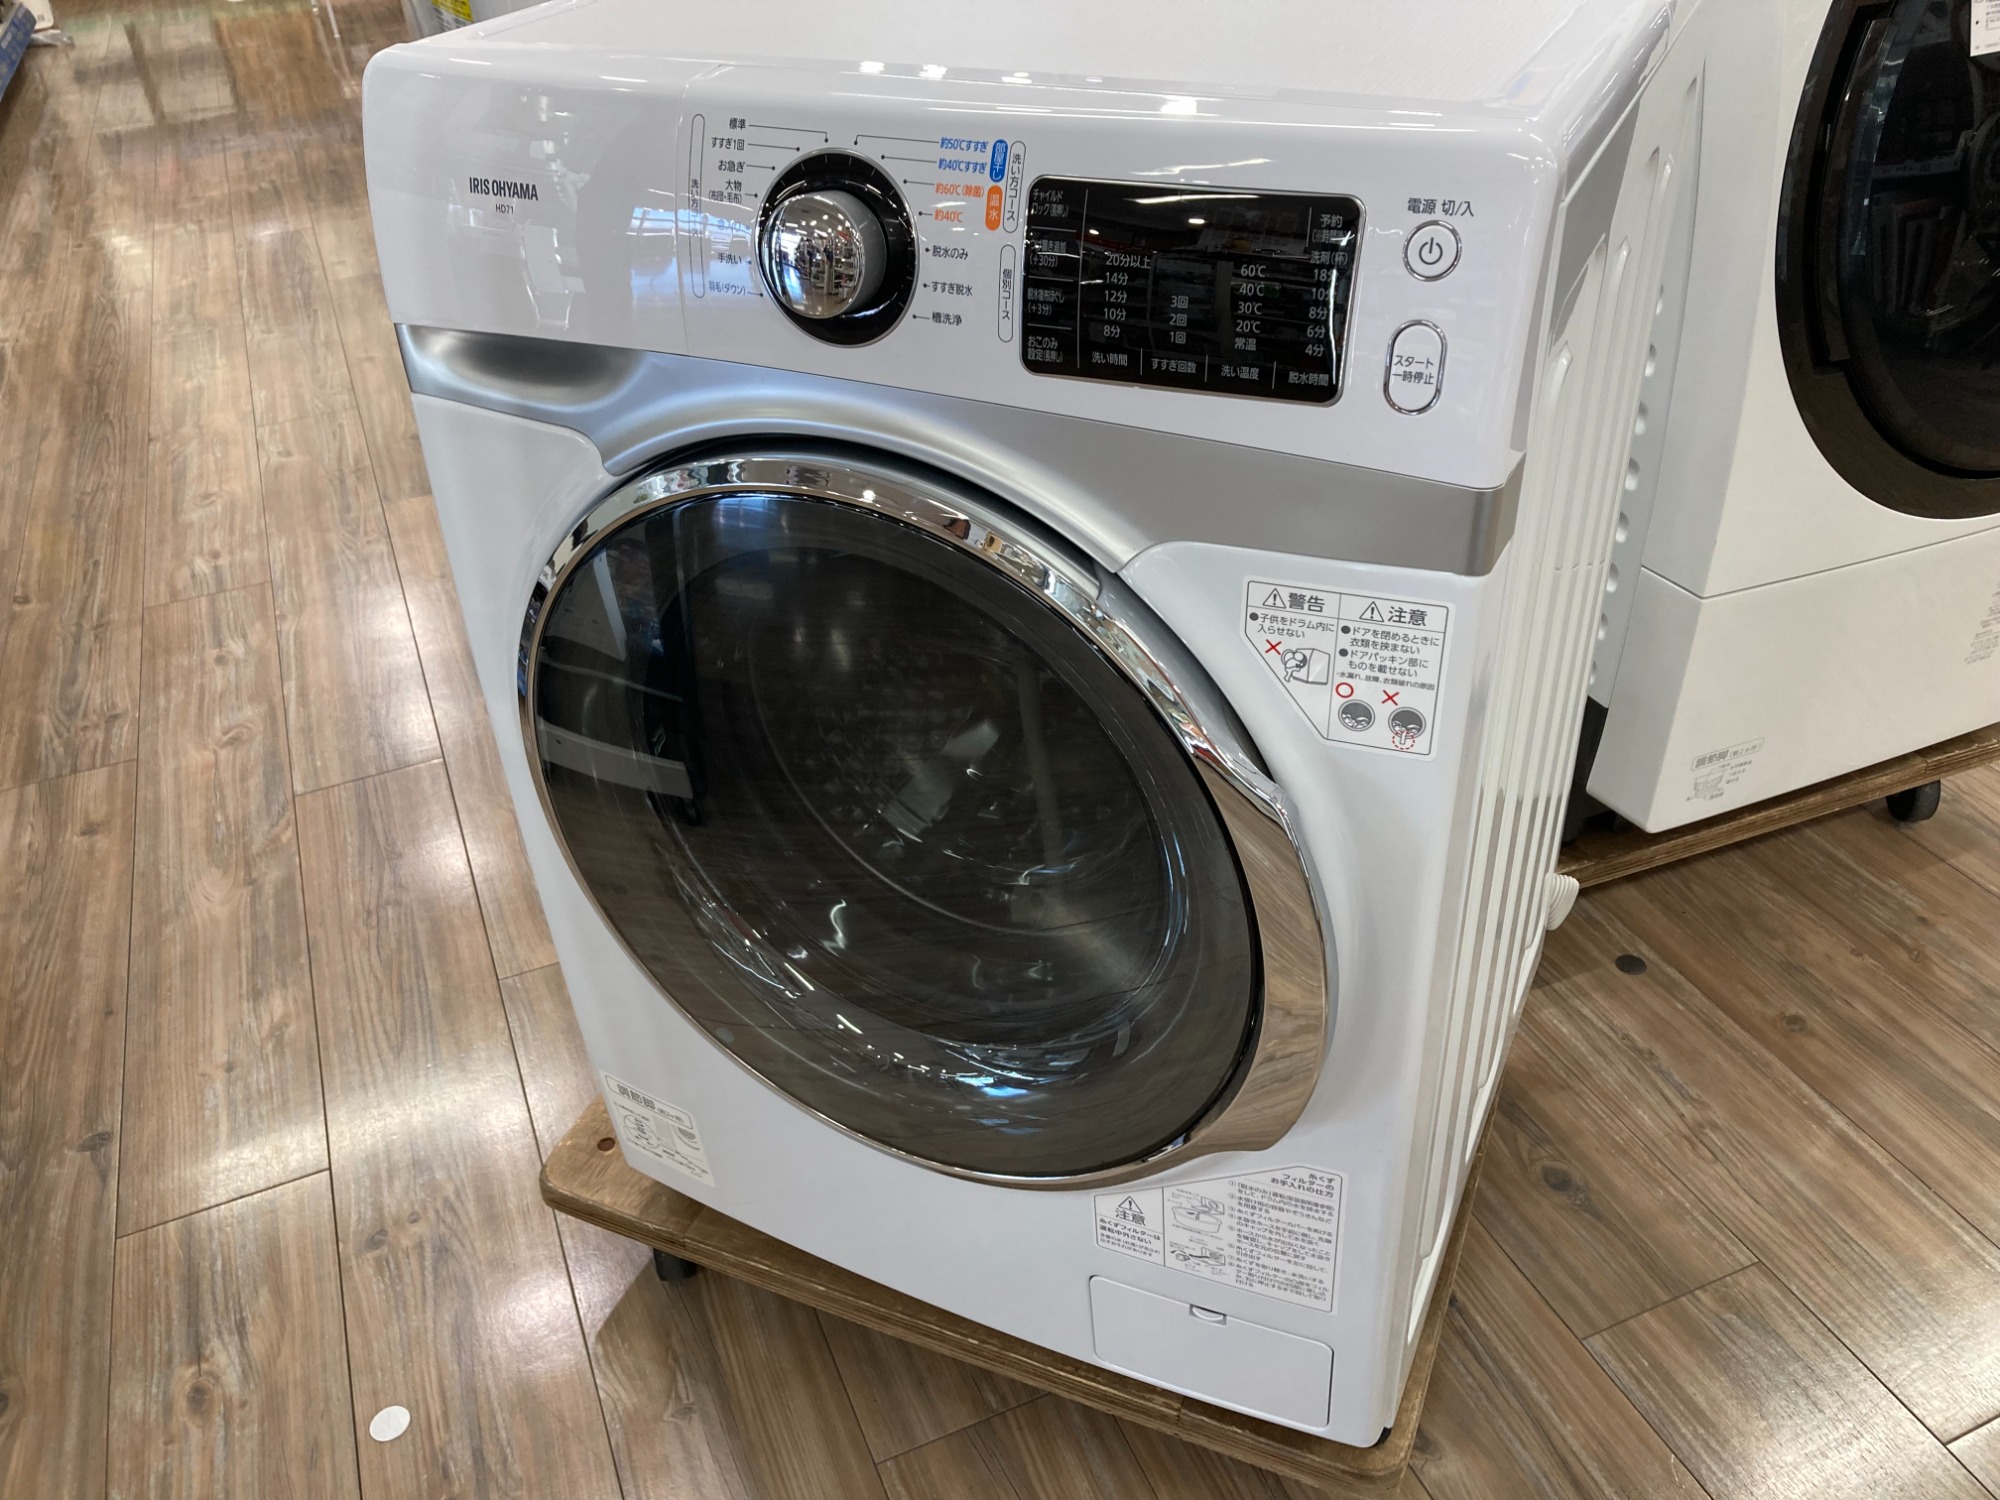 IRIS OHYAMAアイリスオーヤマのドラム式洗濯機が買取入荷しました